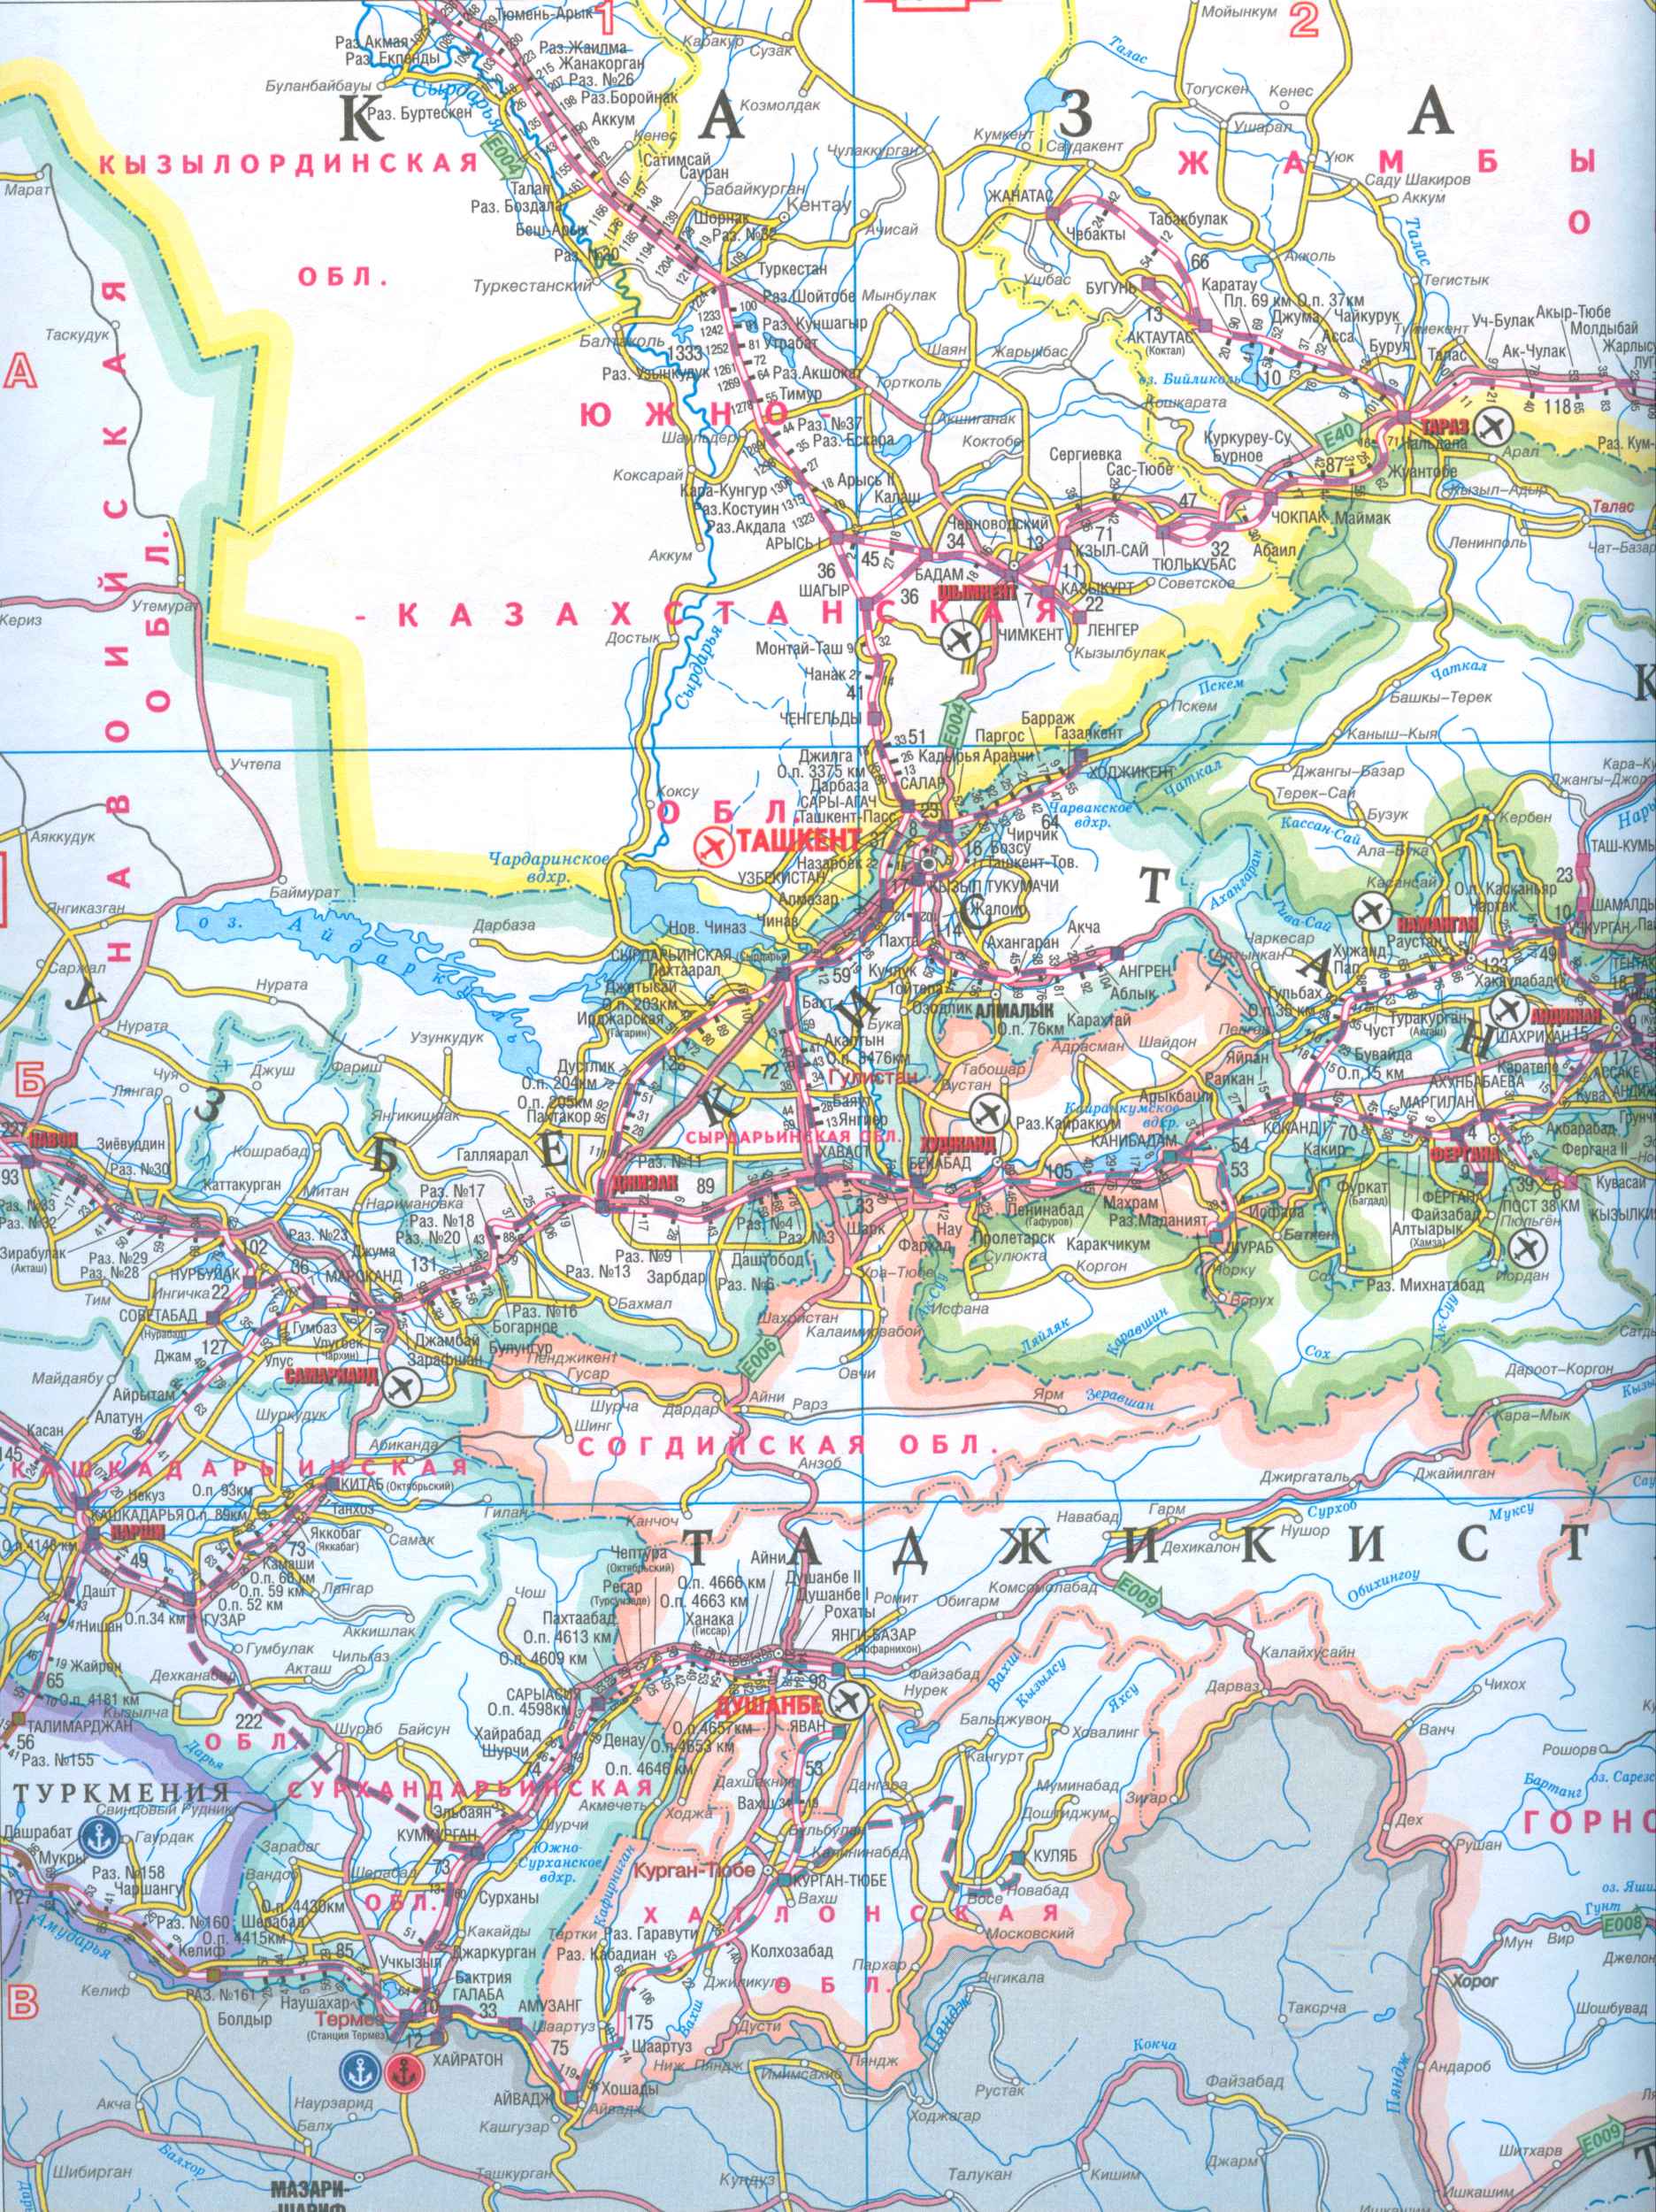 Карта Киргизии и Таджикистана. Карта желехных дорог и автодорог Киргизии и Таджикистана, A0 - 